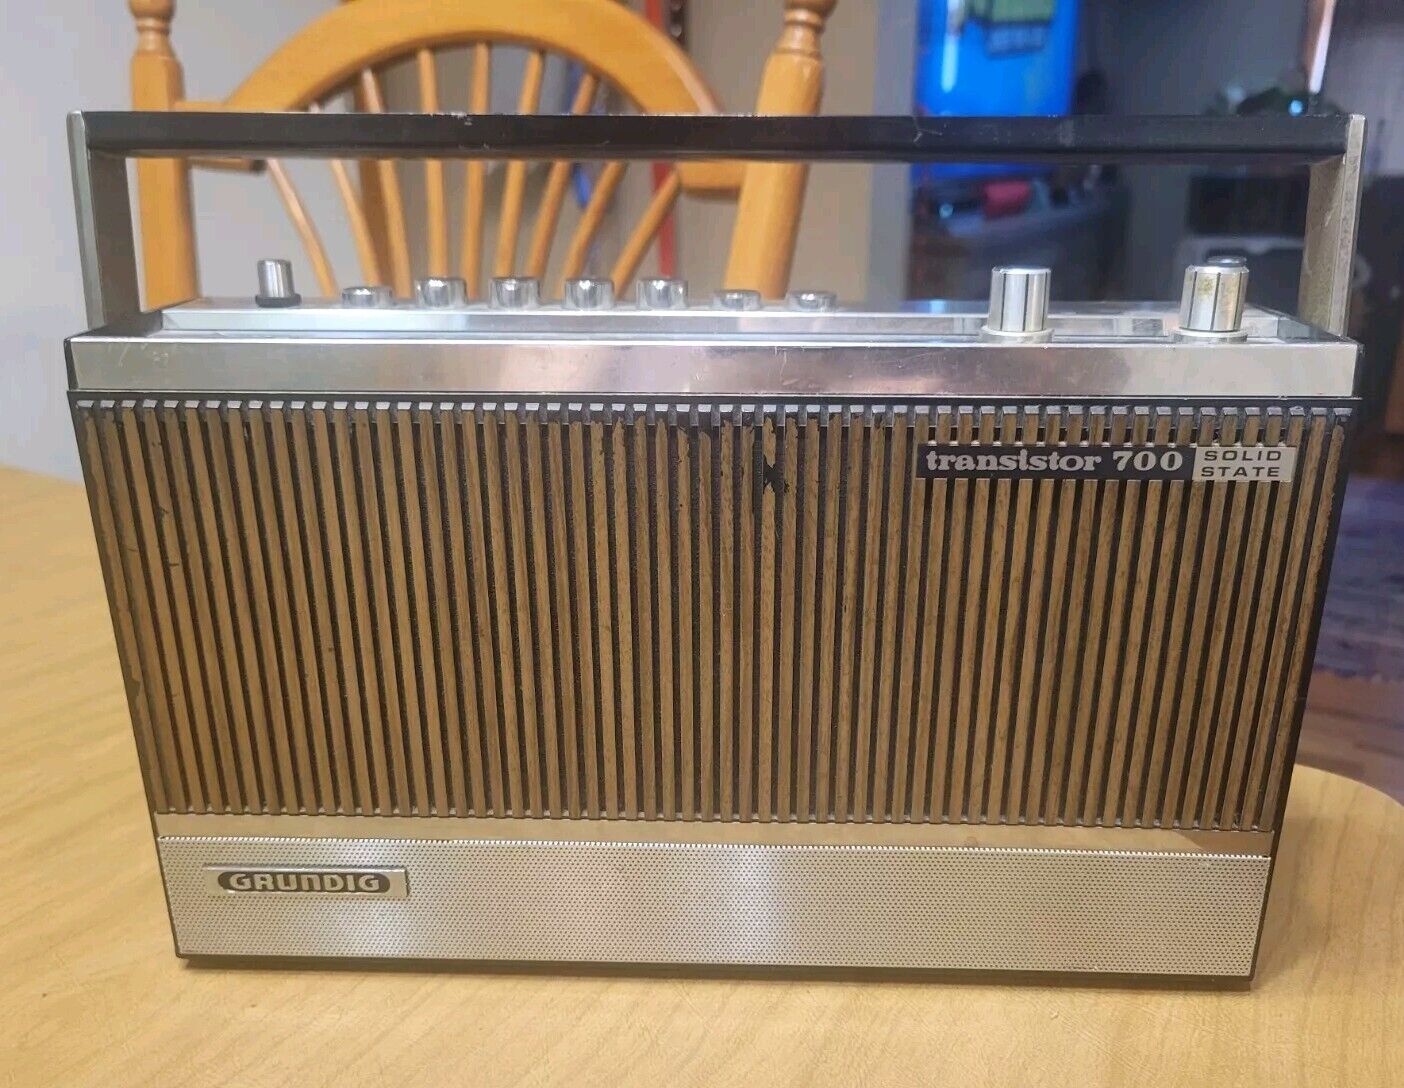 GRUNDIG transistor 700, vintage five bands radio 